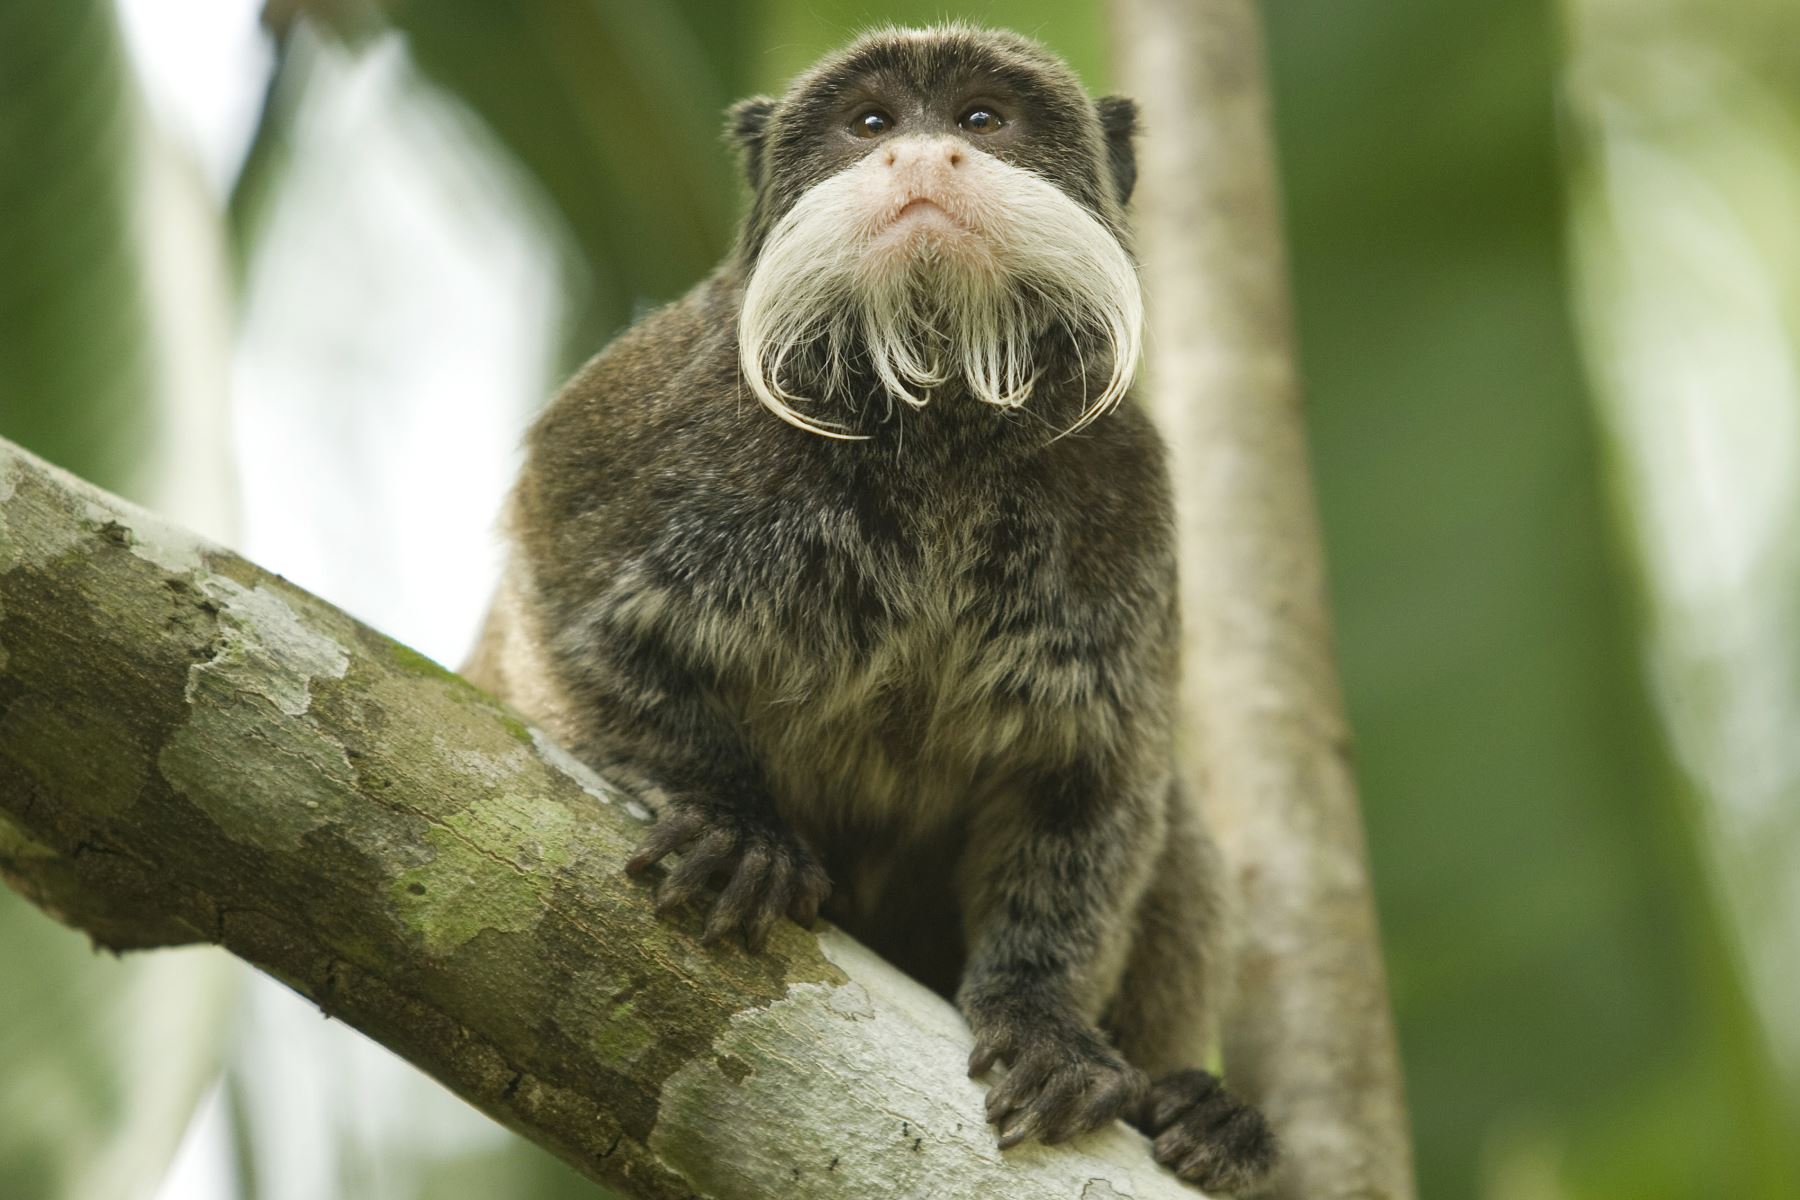 Mono tití emperador. La Reserva de la Biosfera del Manu es un hogar de 1,8 millones de hectáreas de 600 especies de aves y 11 especies de monos entre otros animales, como caimanes y mamíferos, y tiene uno de los niveles más altos de biodiversidad de cualquier parque en el mundo con más de 200 variedades de árboles encontrados en una hectárea.
Foto: Enrique Castro-Mendivil / PROMPERU